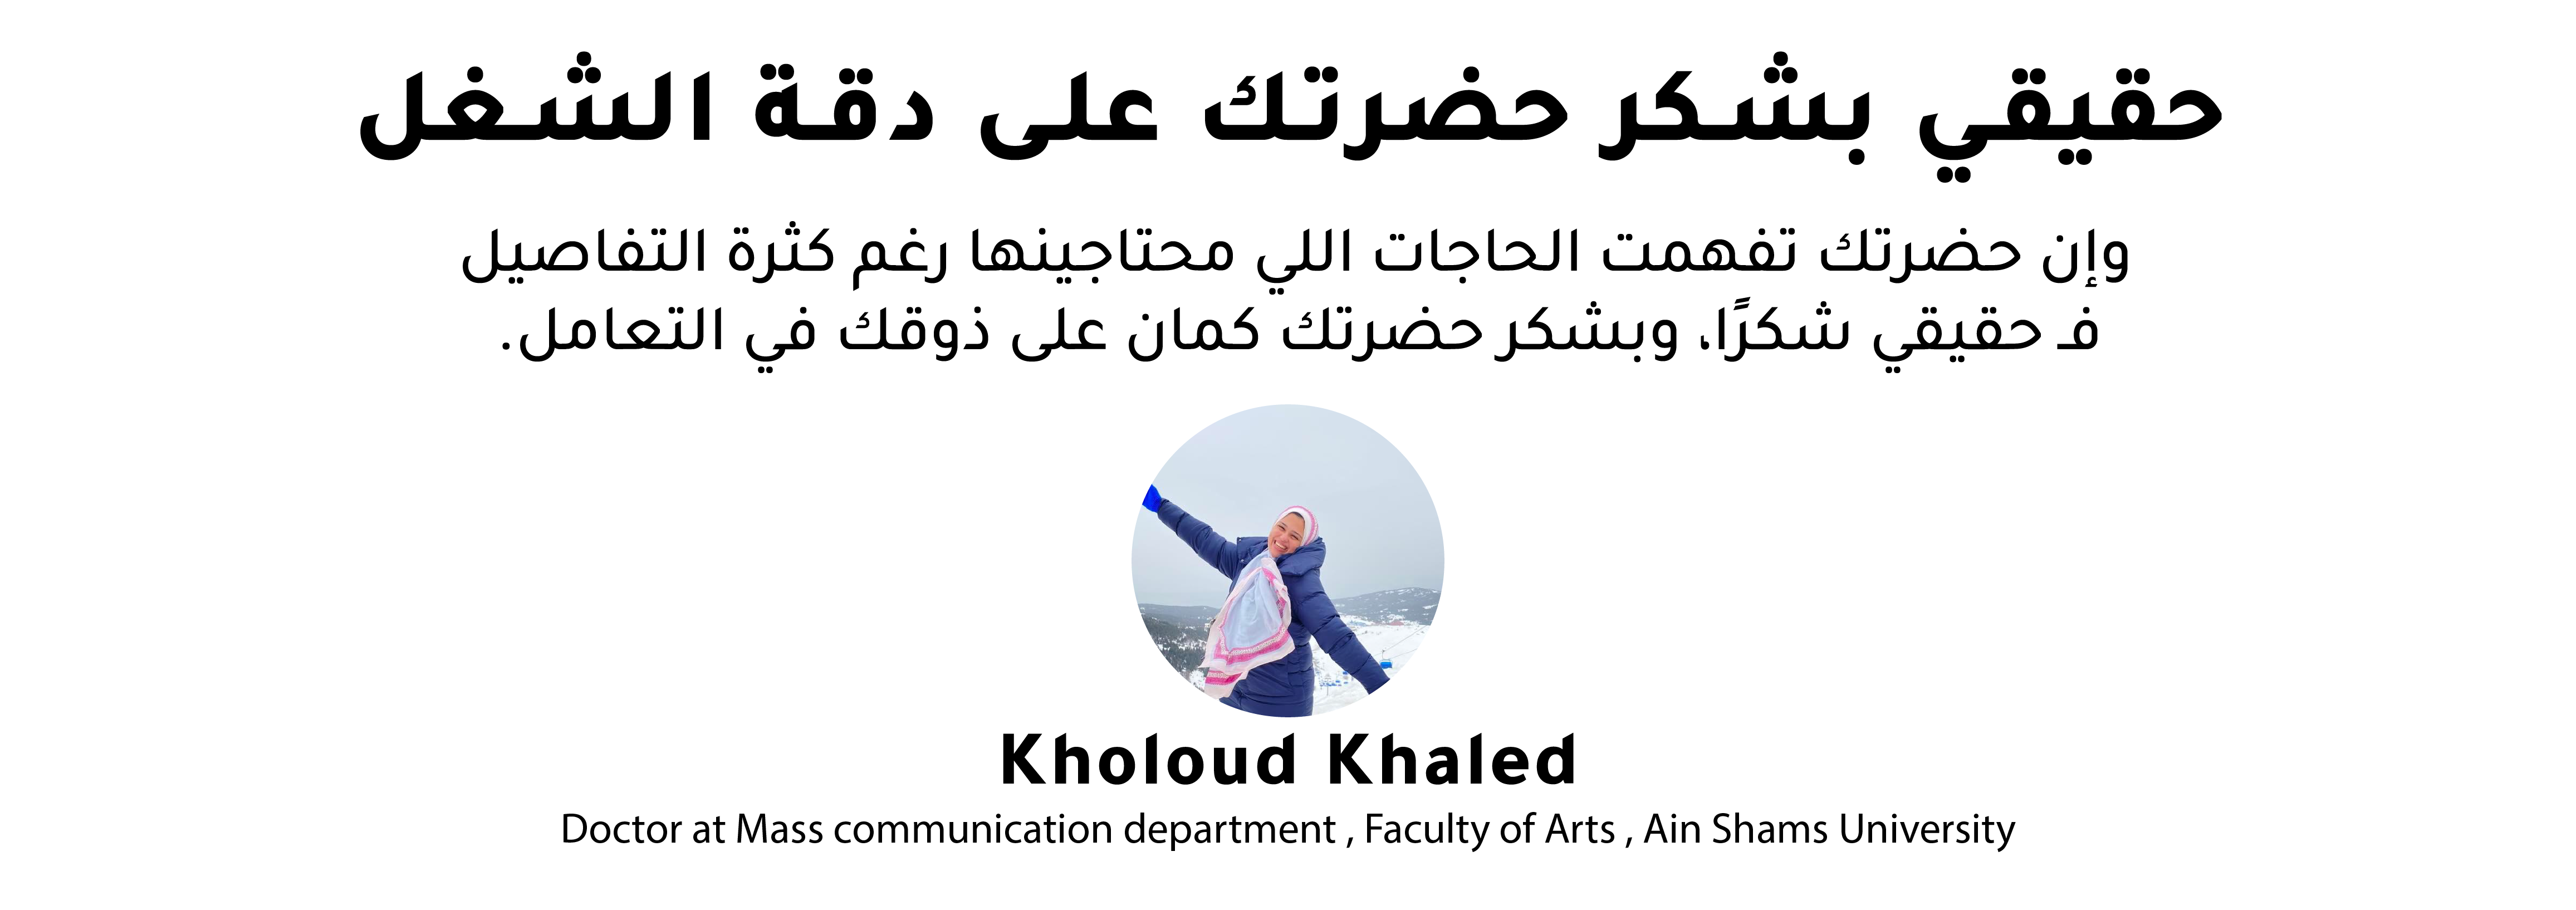 Kholoud Khaled